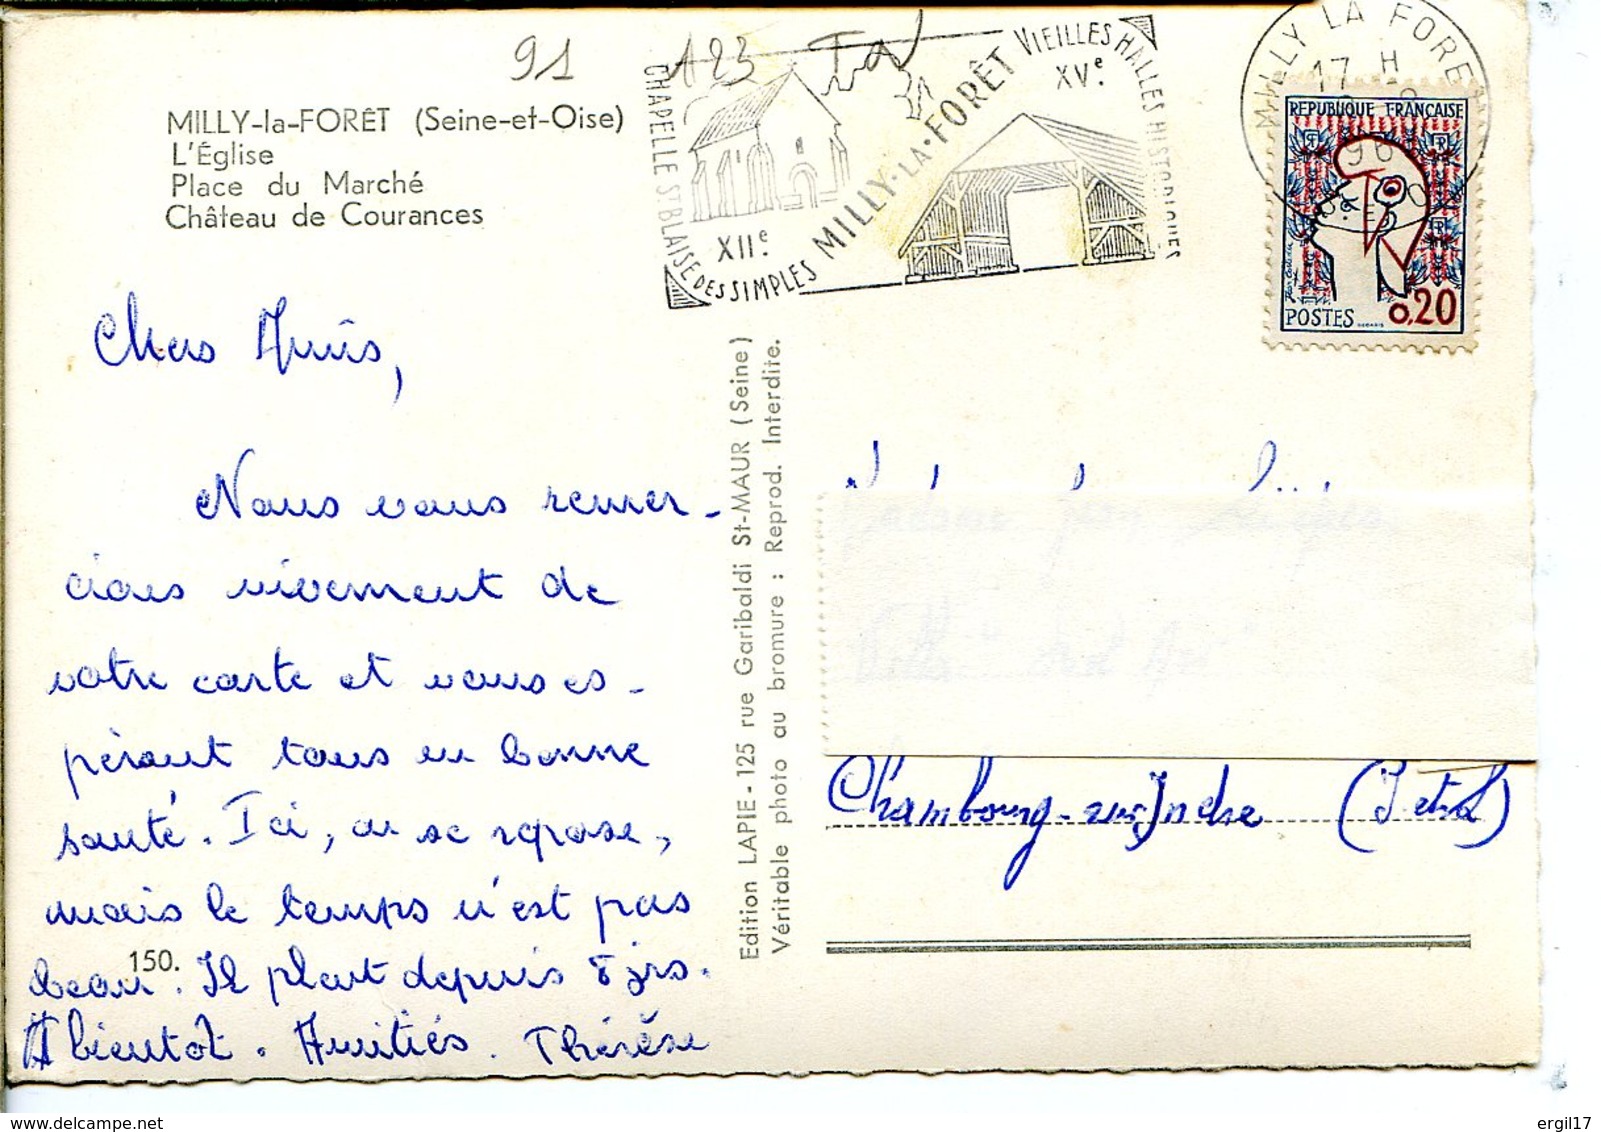 91490 MILLY-LA-FORÊT - église, Place Du Marché, Château De Courances - Véritable Photo Au Bromure, 1961 - Milly La Foret